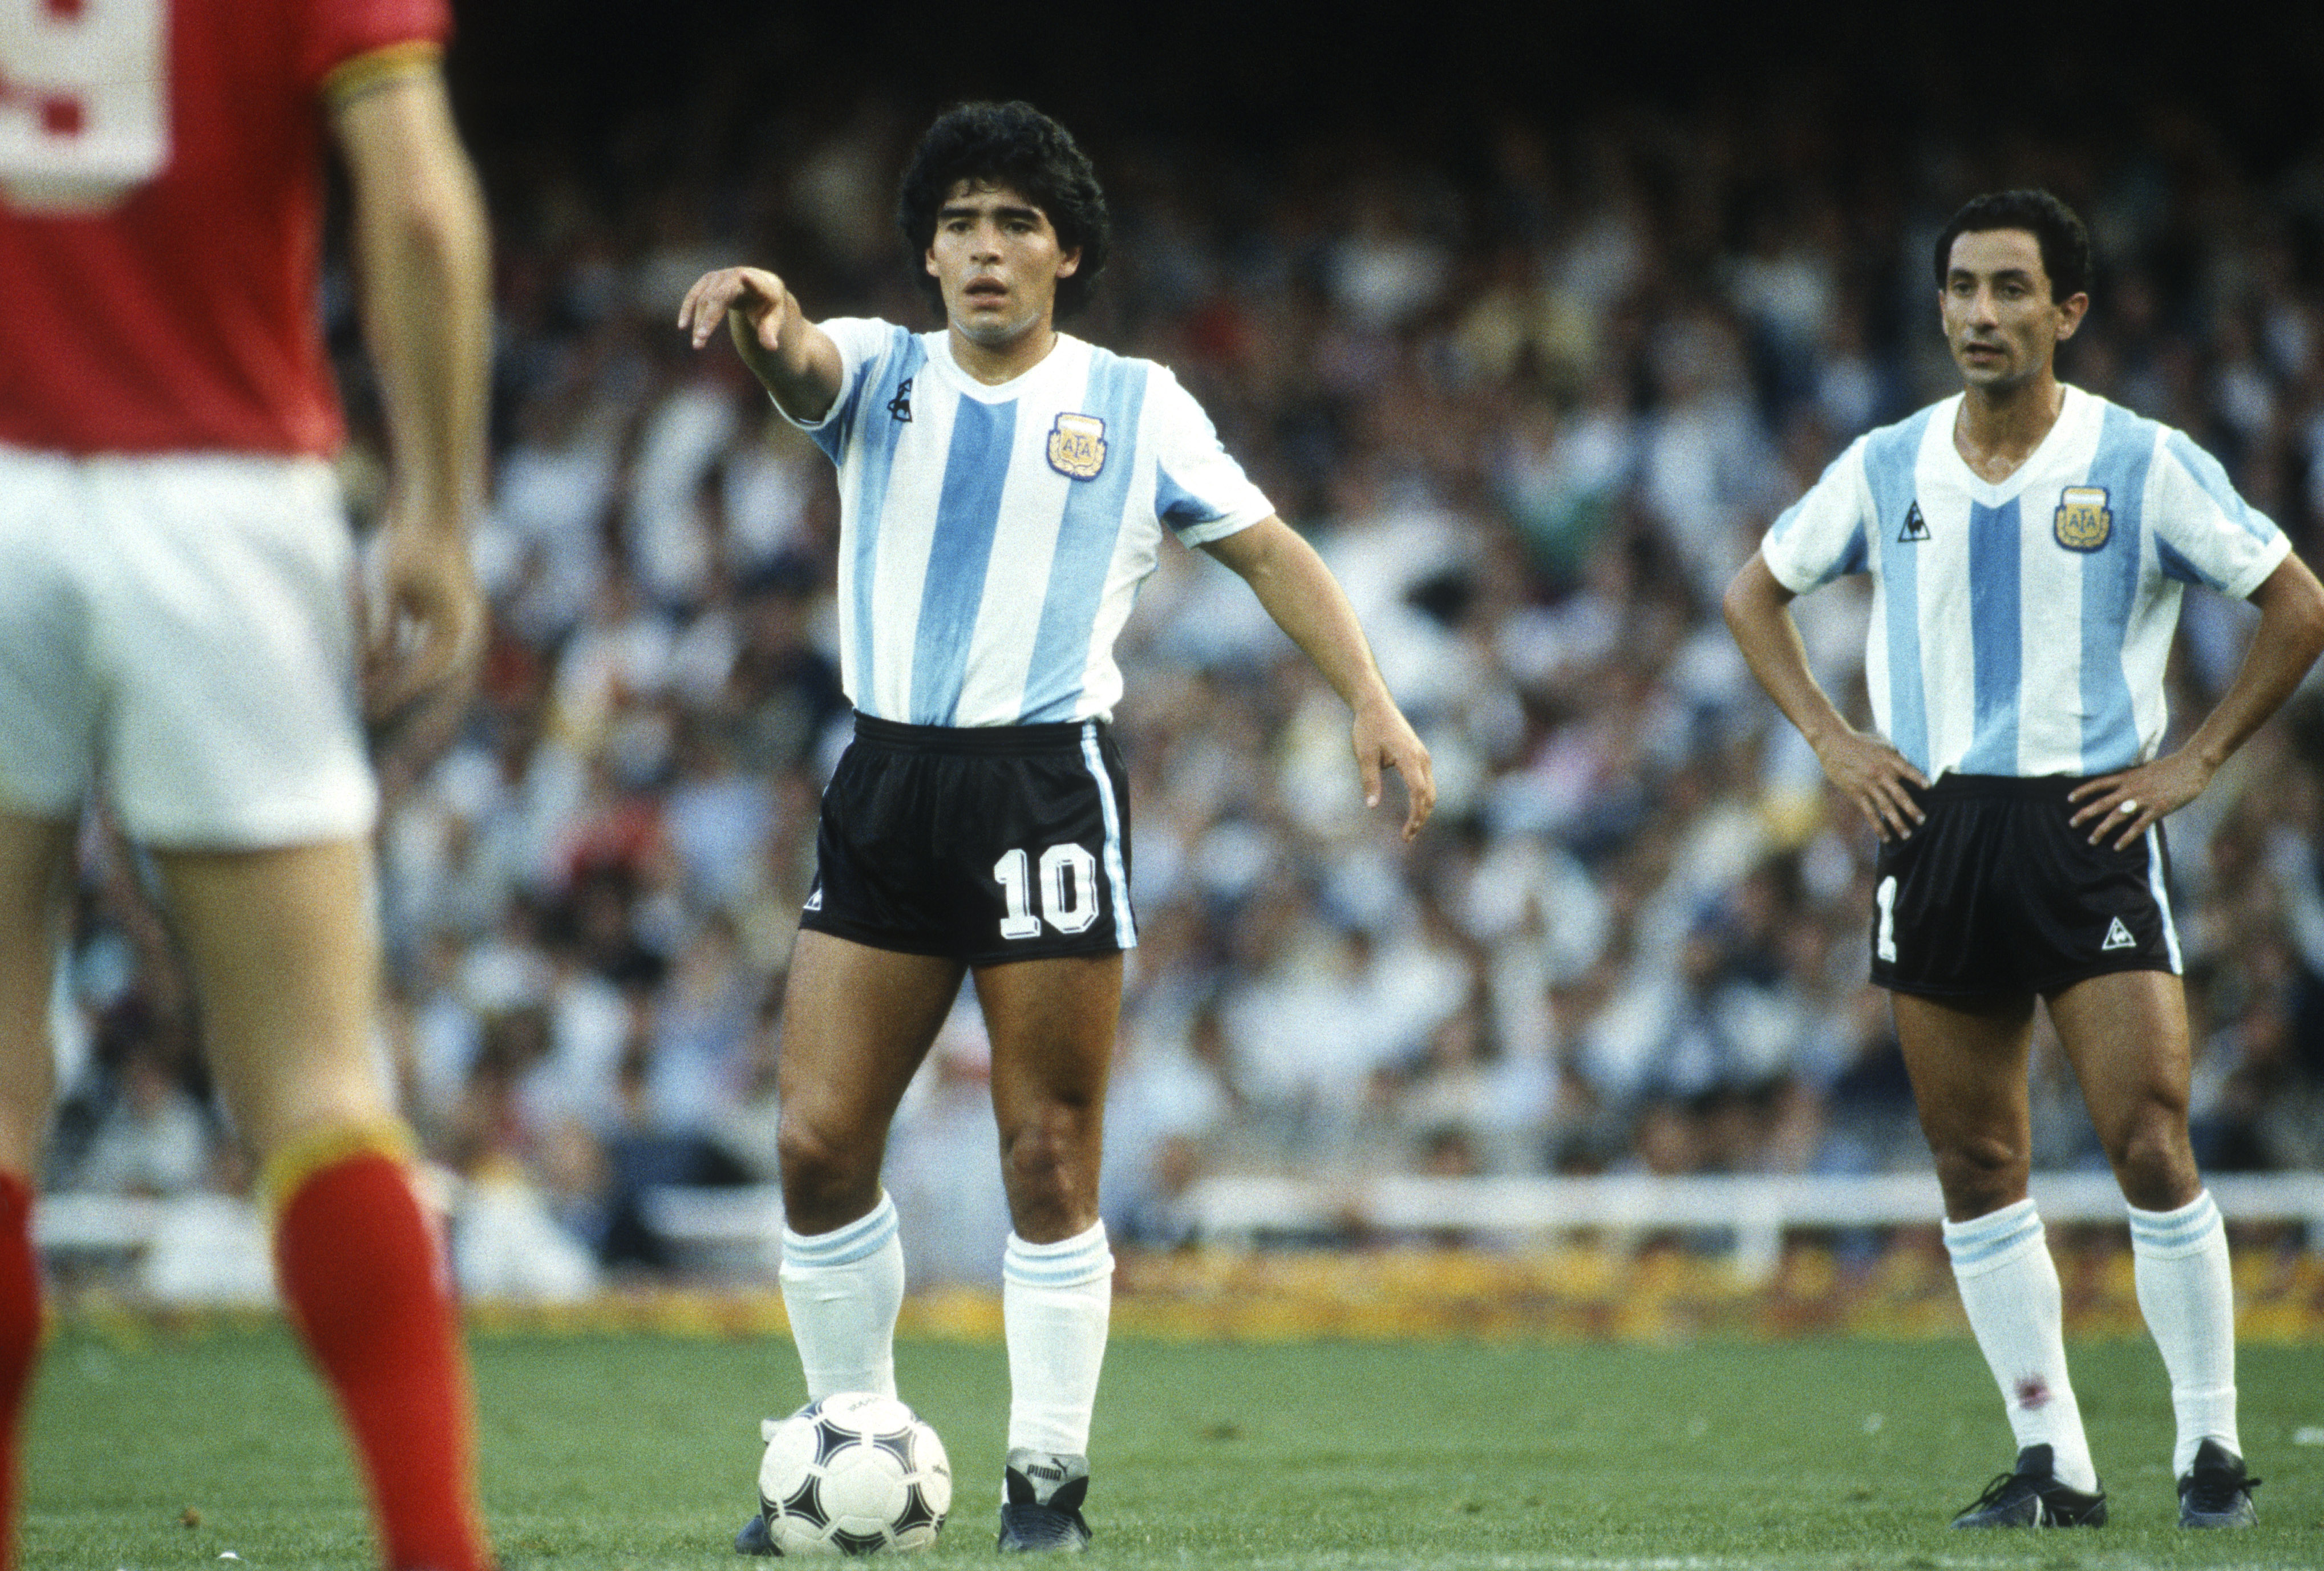 Die Fans waren schockiert, als sie Diego Maradona im Mittelfeld sahen